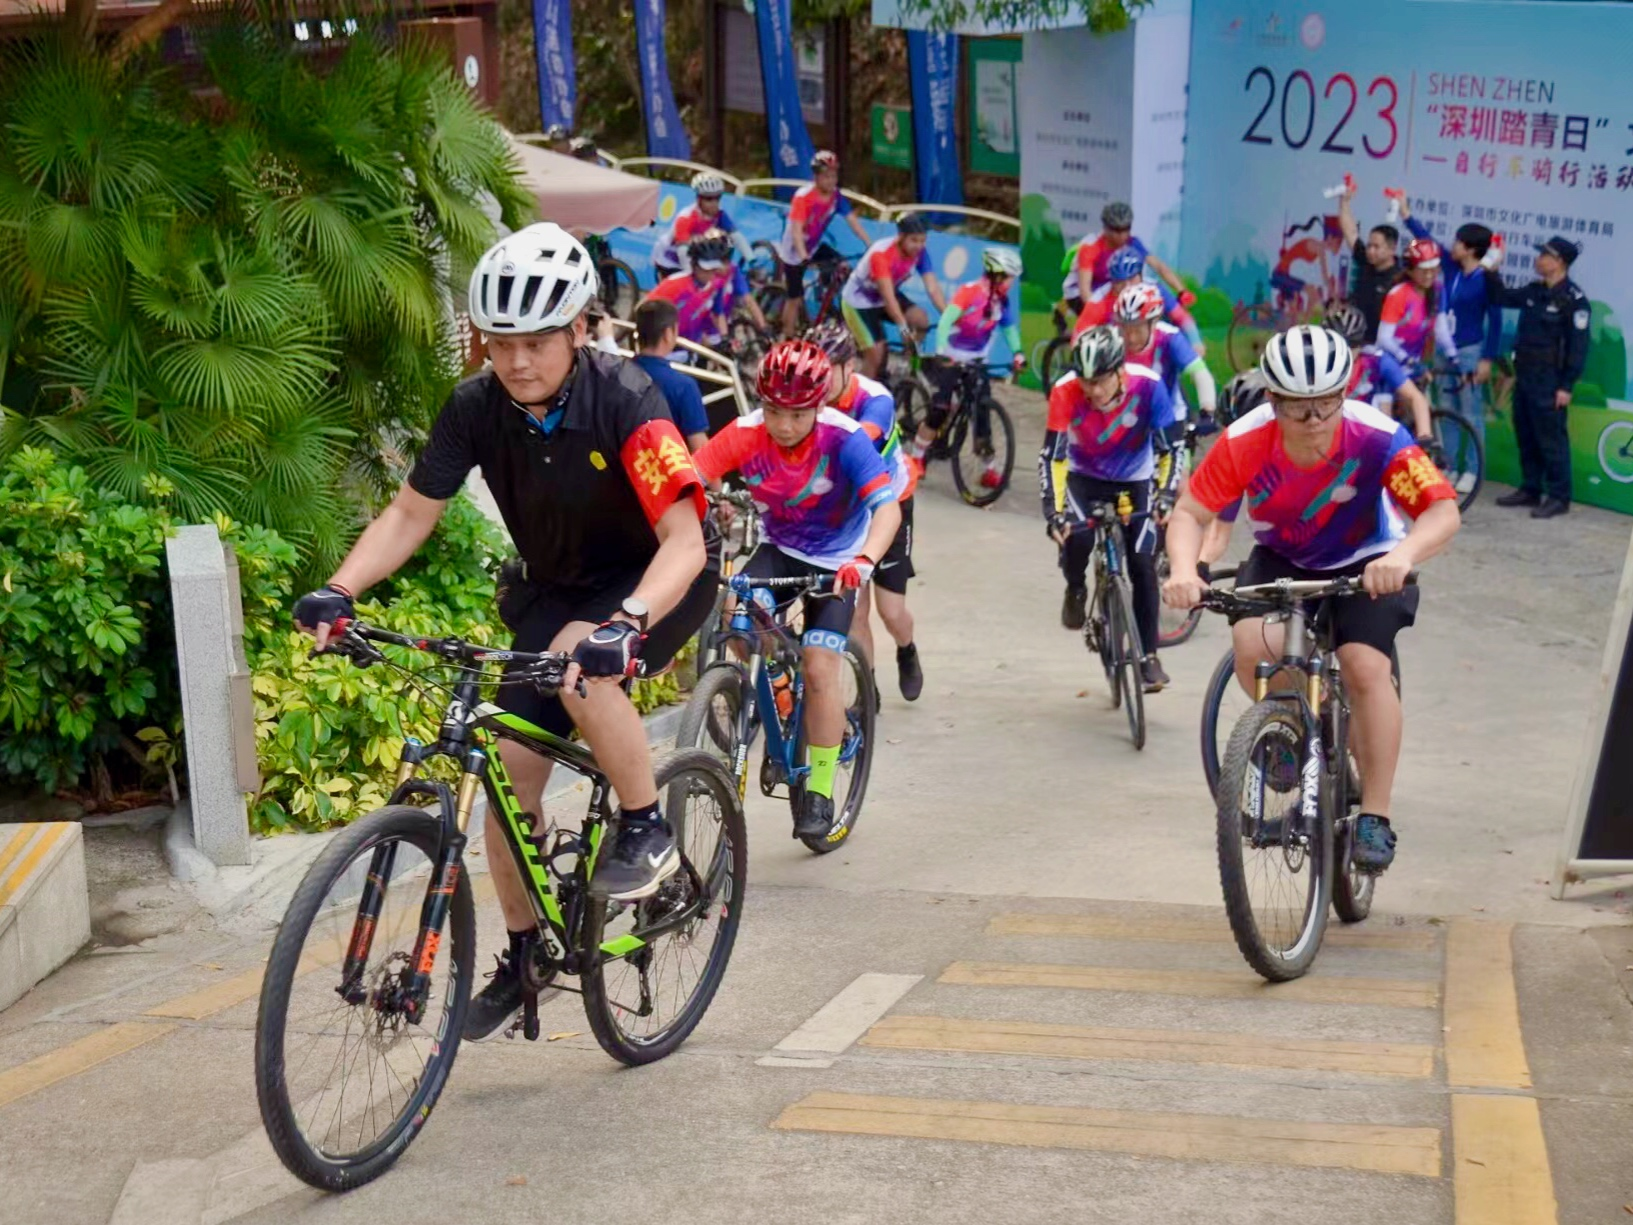 200余名自行车爱好者齐聚绿道，“深圳踏青日”自行车骑行活动举行